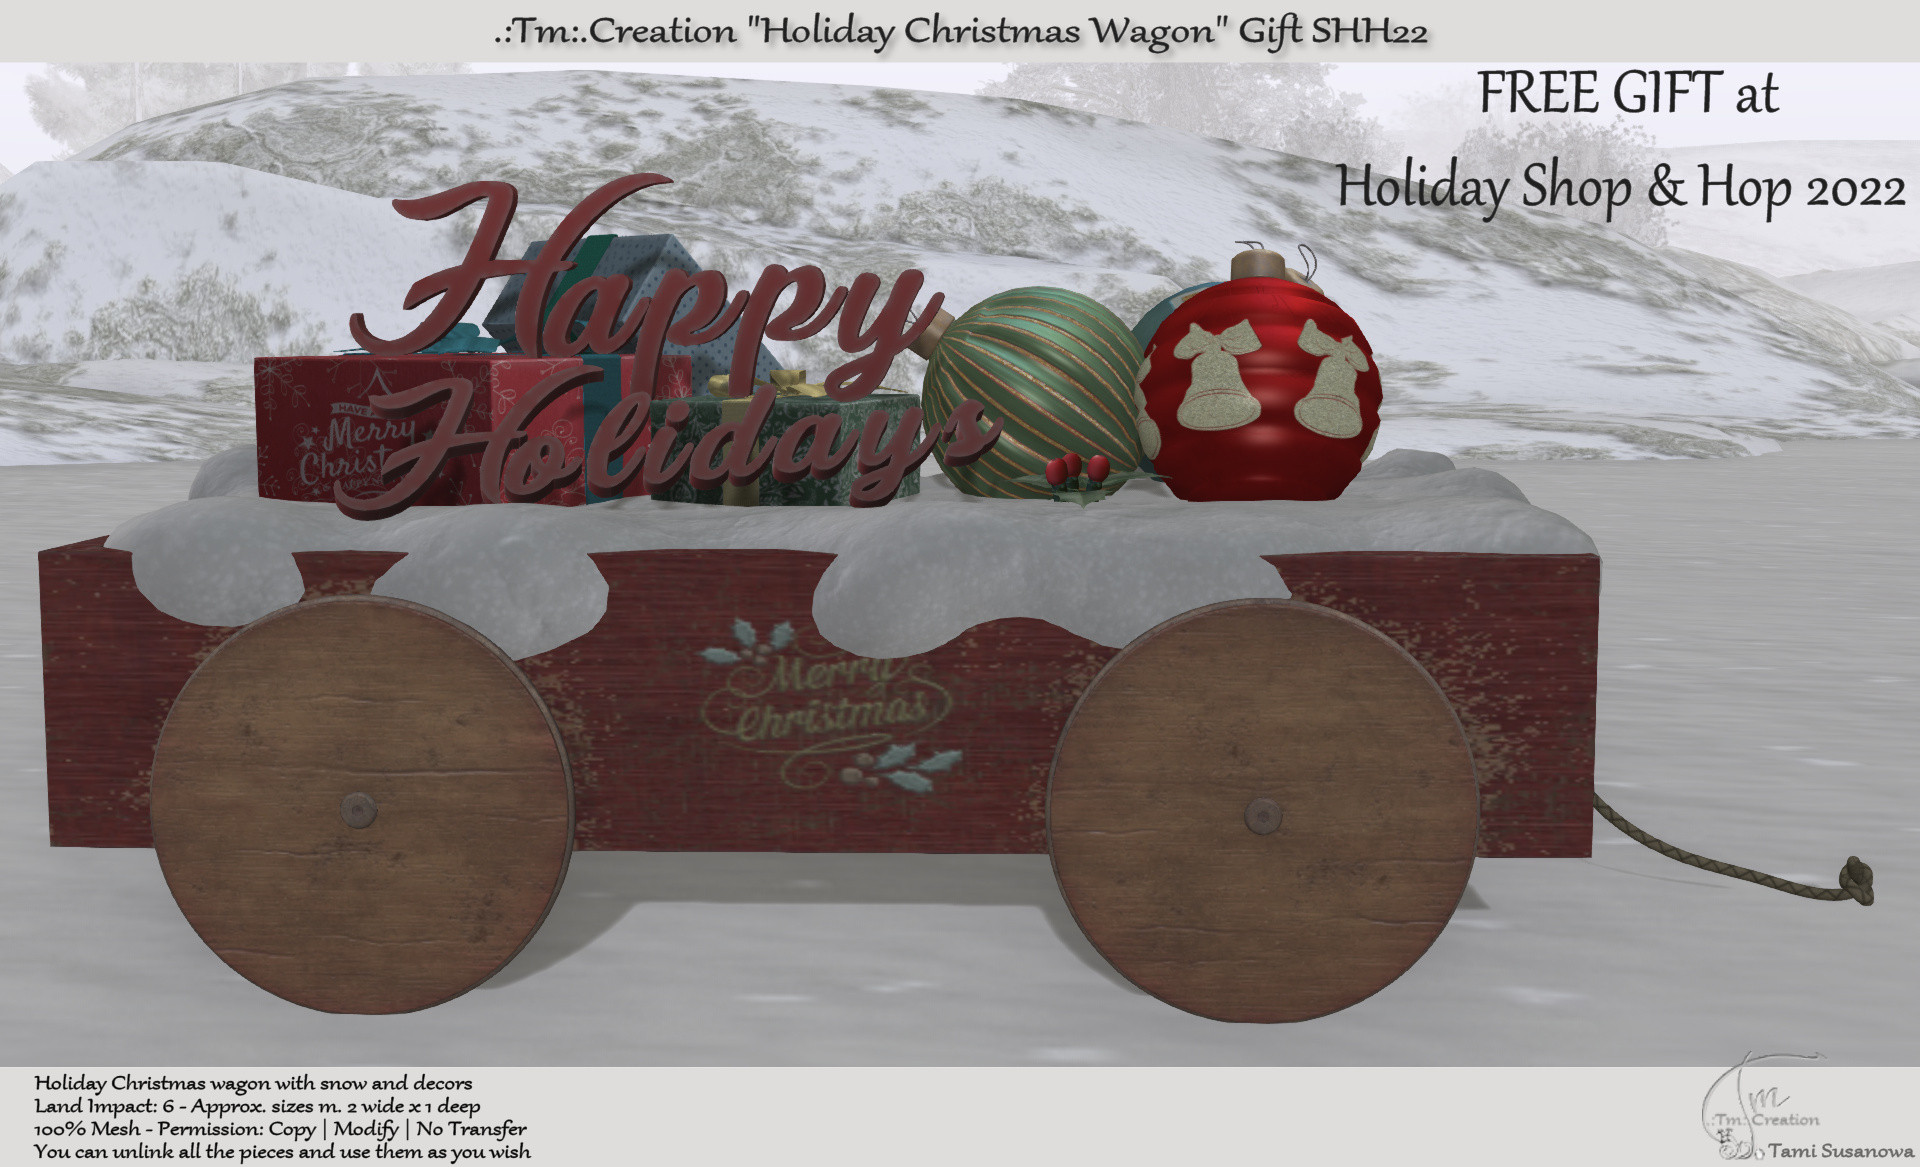 Tm Creation – Holiday Christmas Wagon